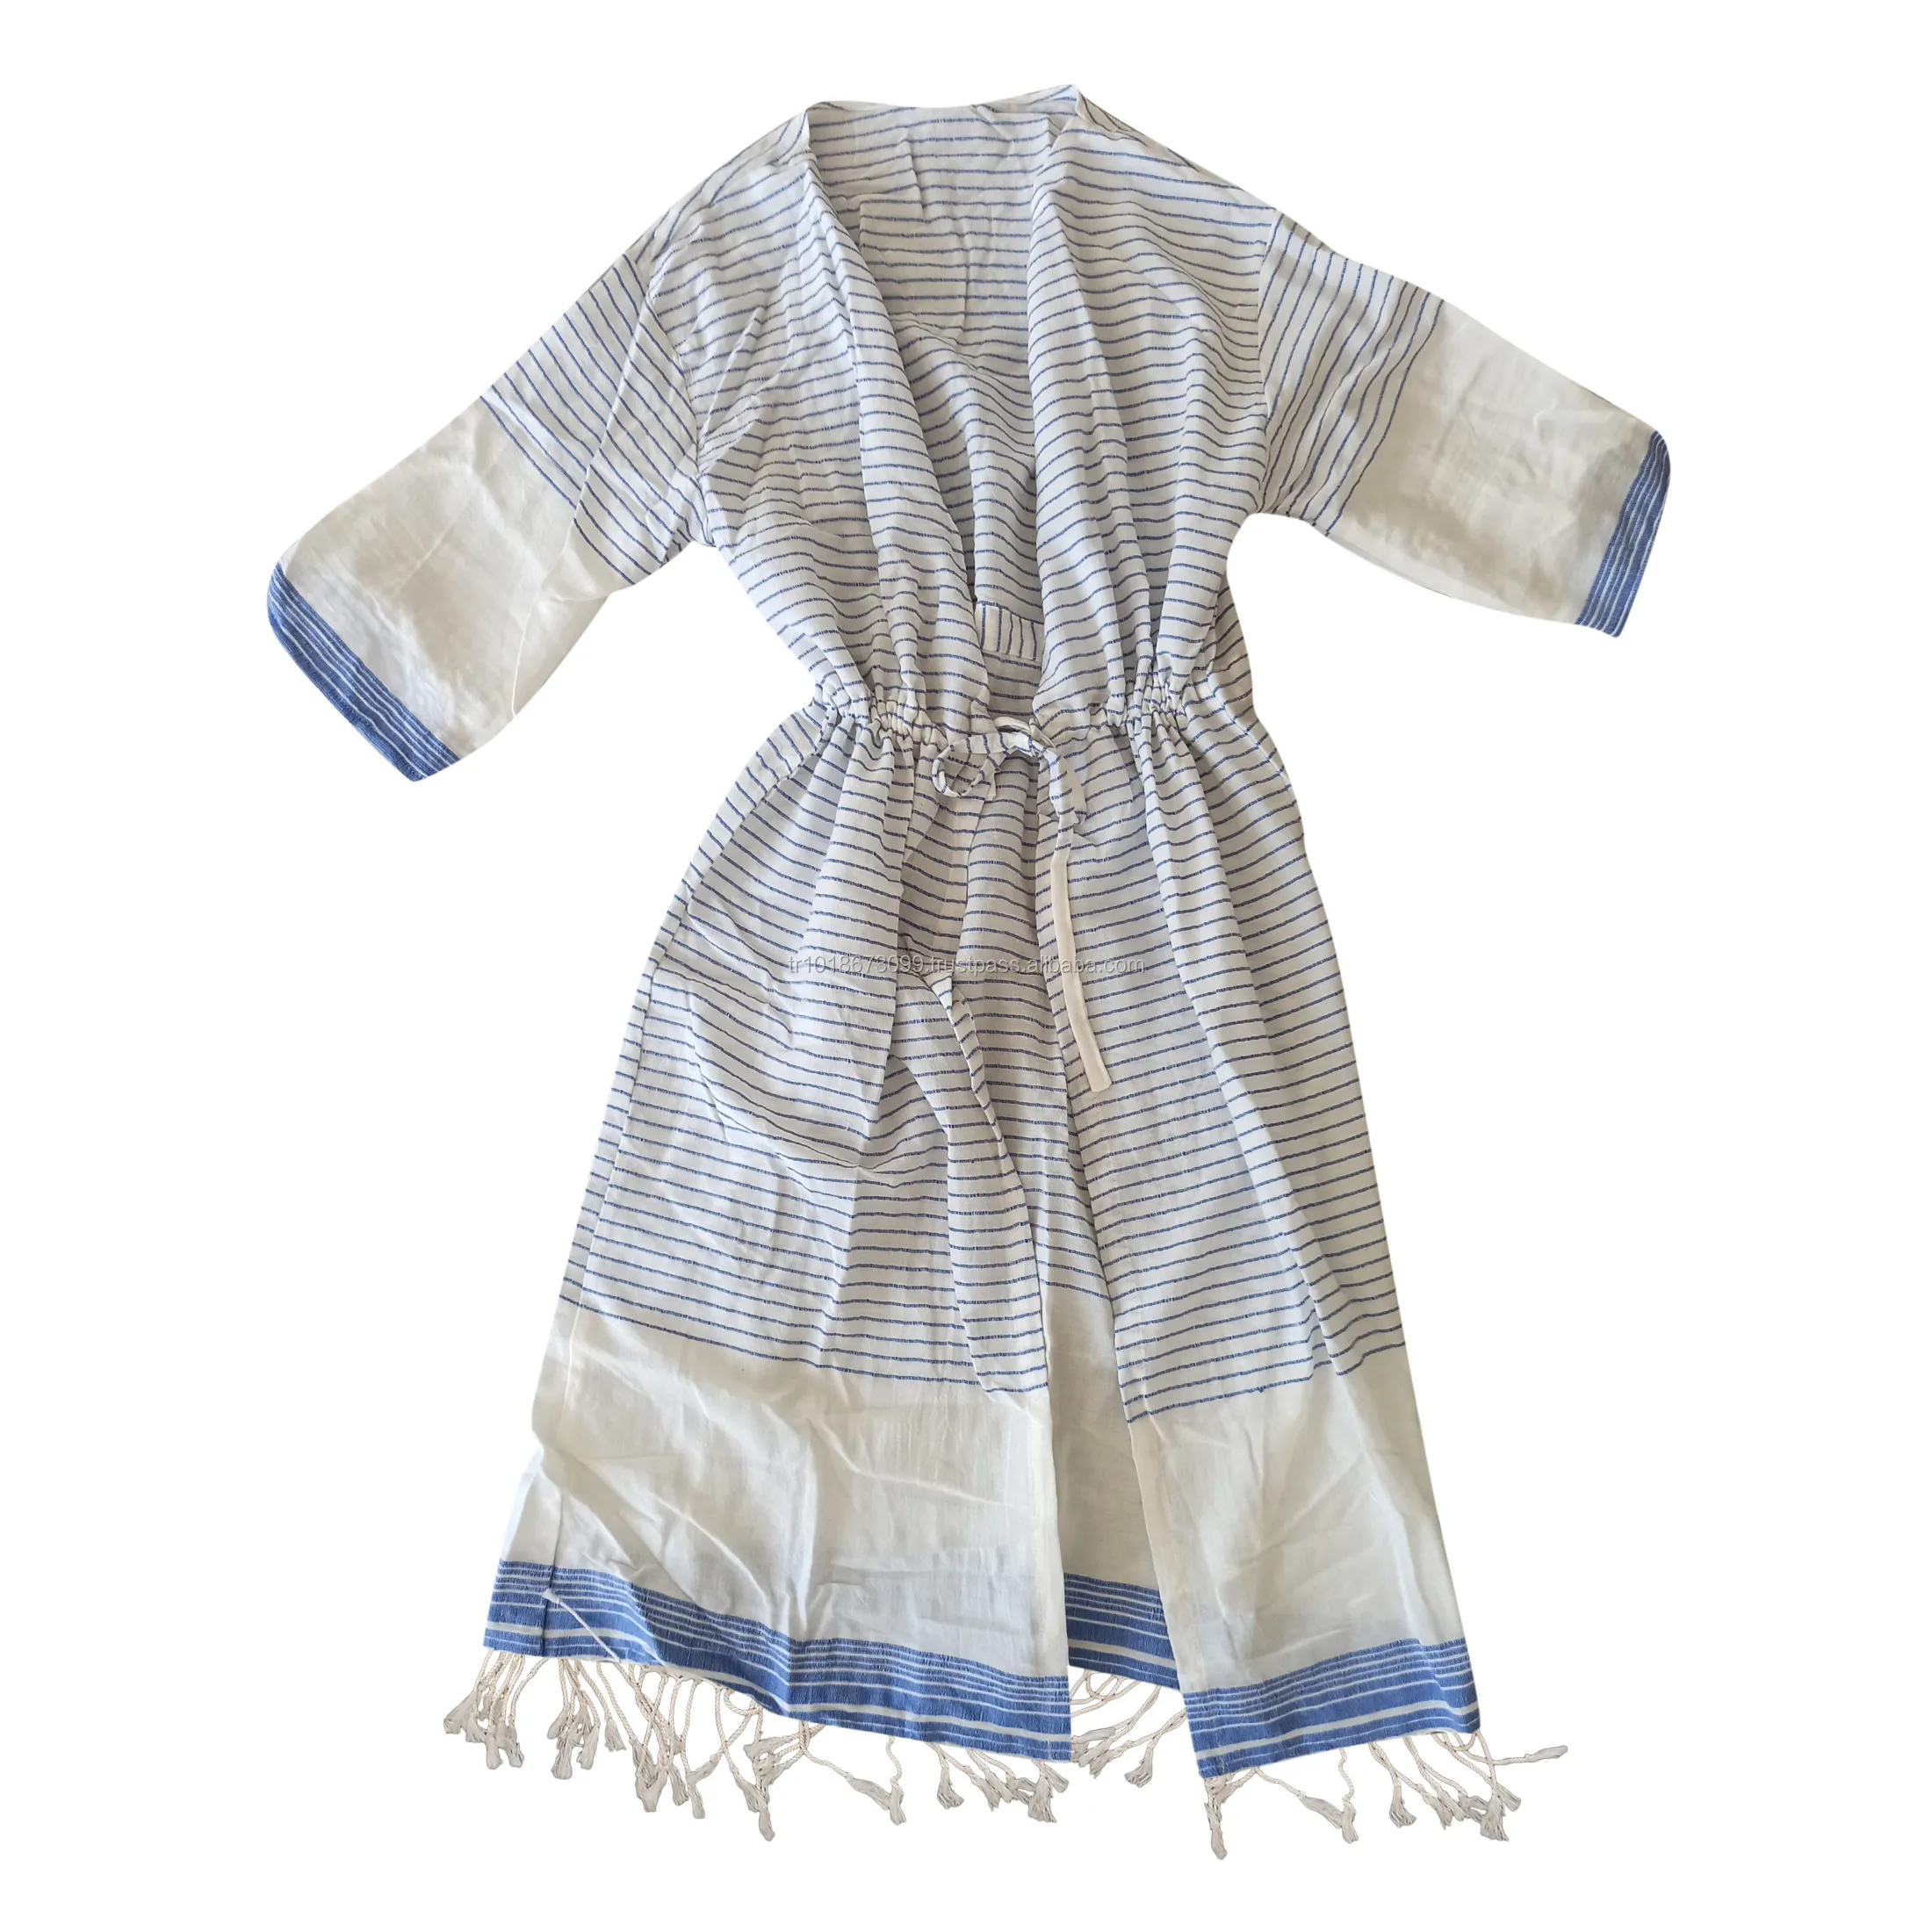 Халат хлопковый для женщин и мужчин, изготовленный в Турции, дышащая ткань, легкий, бестселлер, турецкие халаты